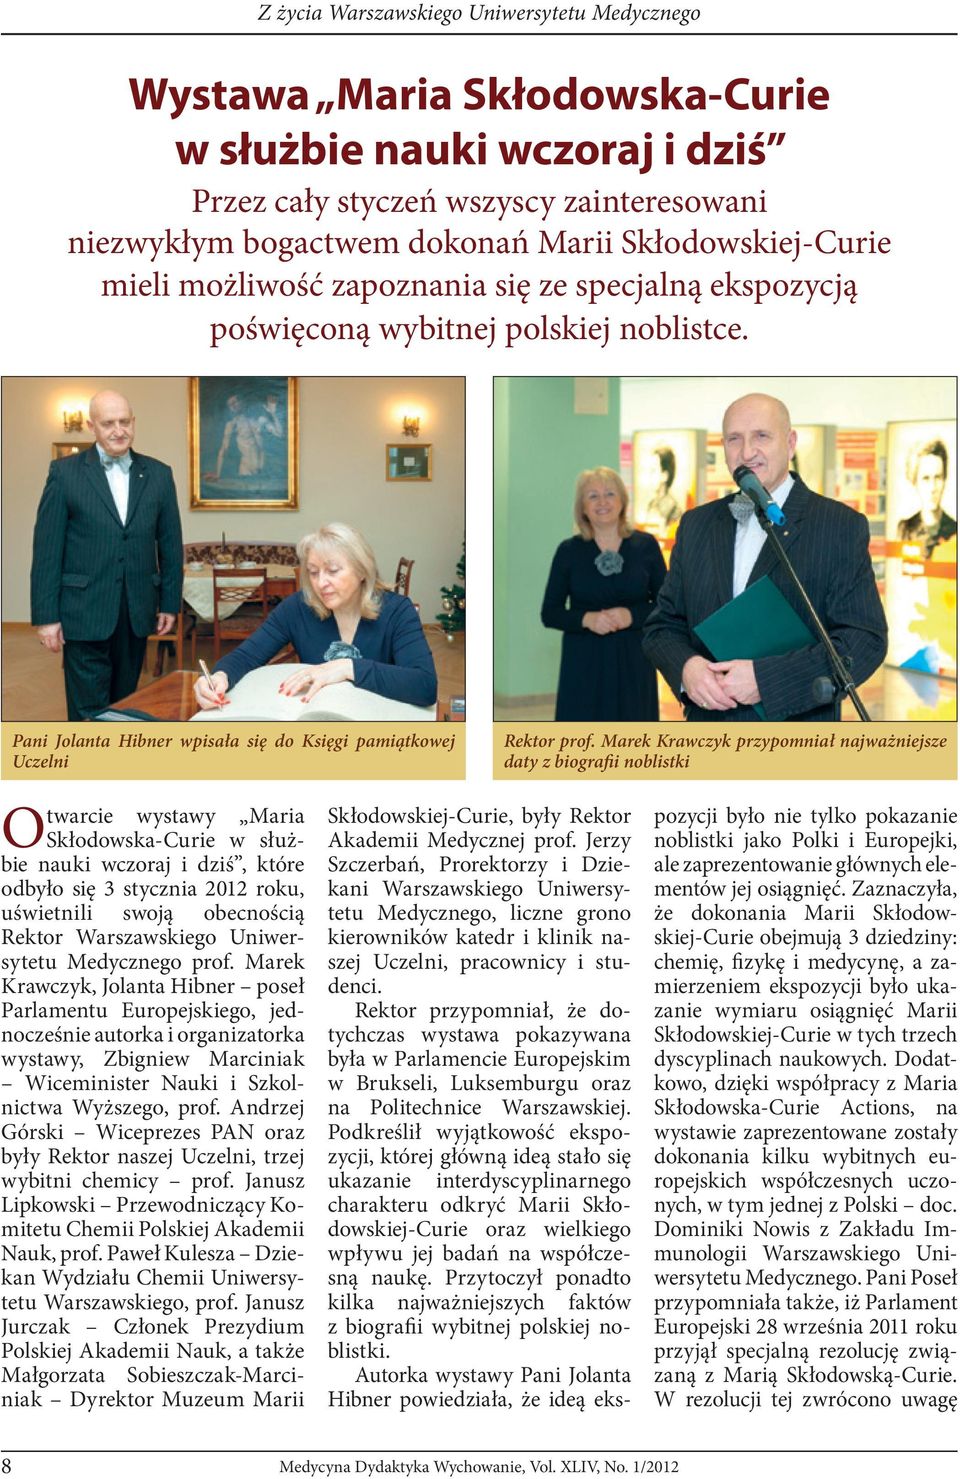 Pani Jolanta Hibner wpisała się do Księgi pamiątkowej Uczelni Otwarcie wystawy Maria Skłodowska-Curie w służbie nauki wczoraj i dziś, które odbyło się 3 stycznia 2012 roku, uświetnili swoją